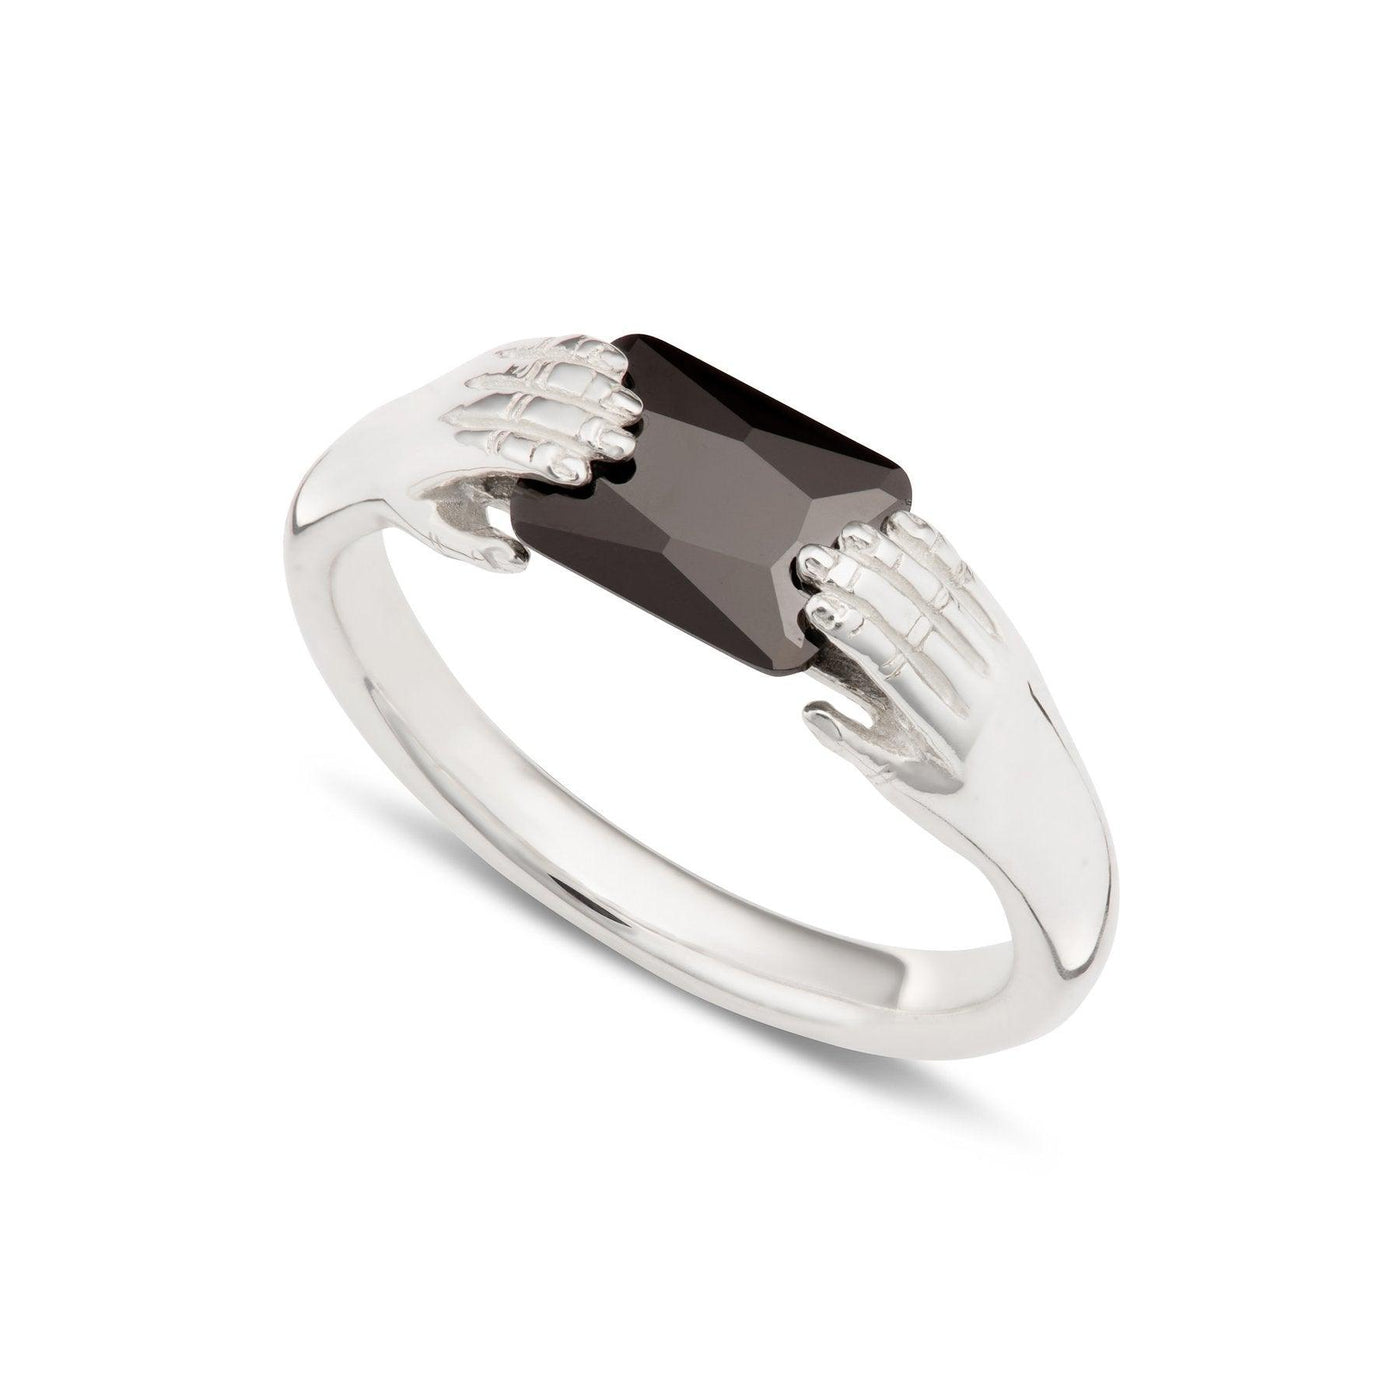 Scream Pretty Fede Ring with Black Stone - Rococo Jewellery